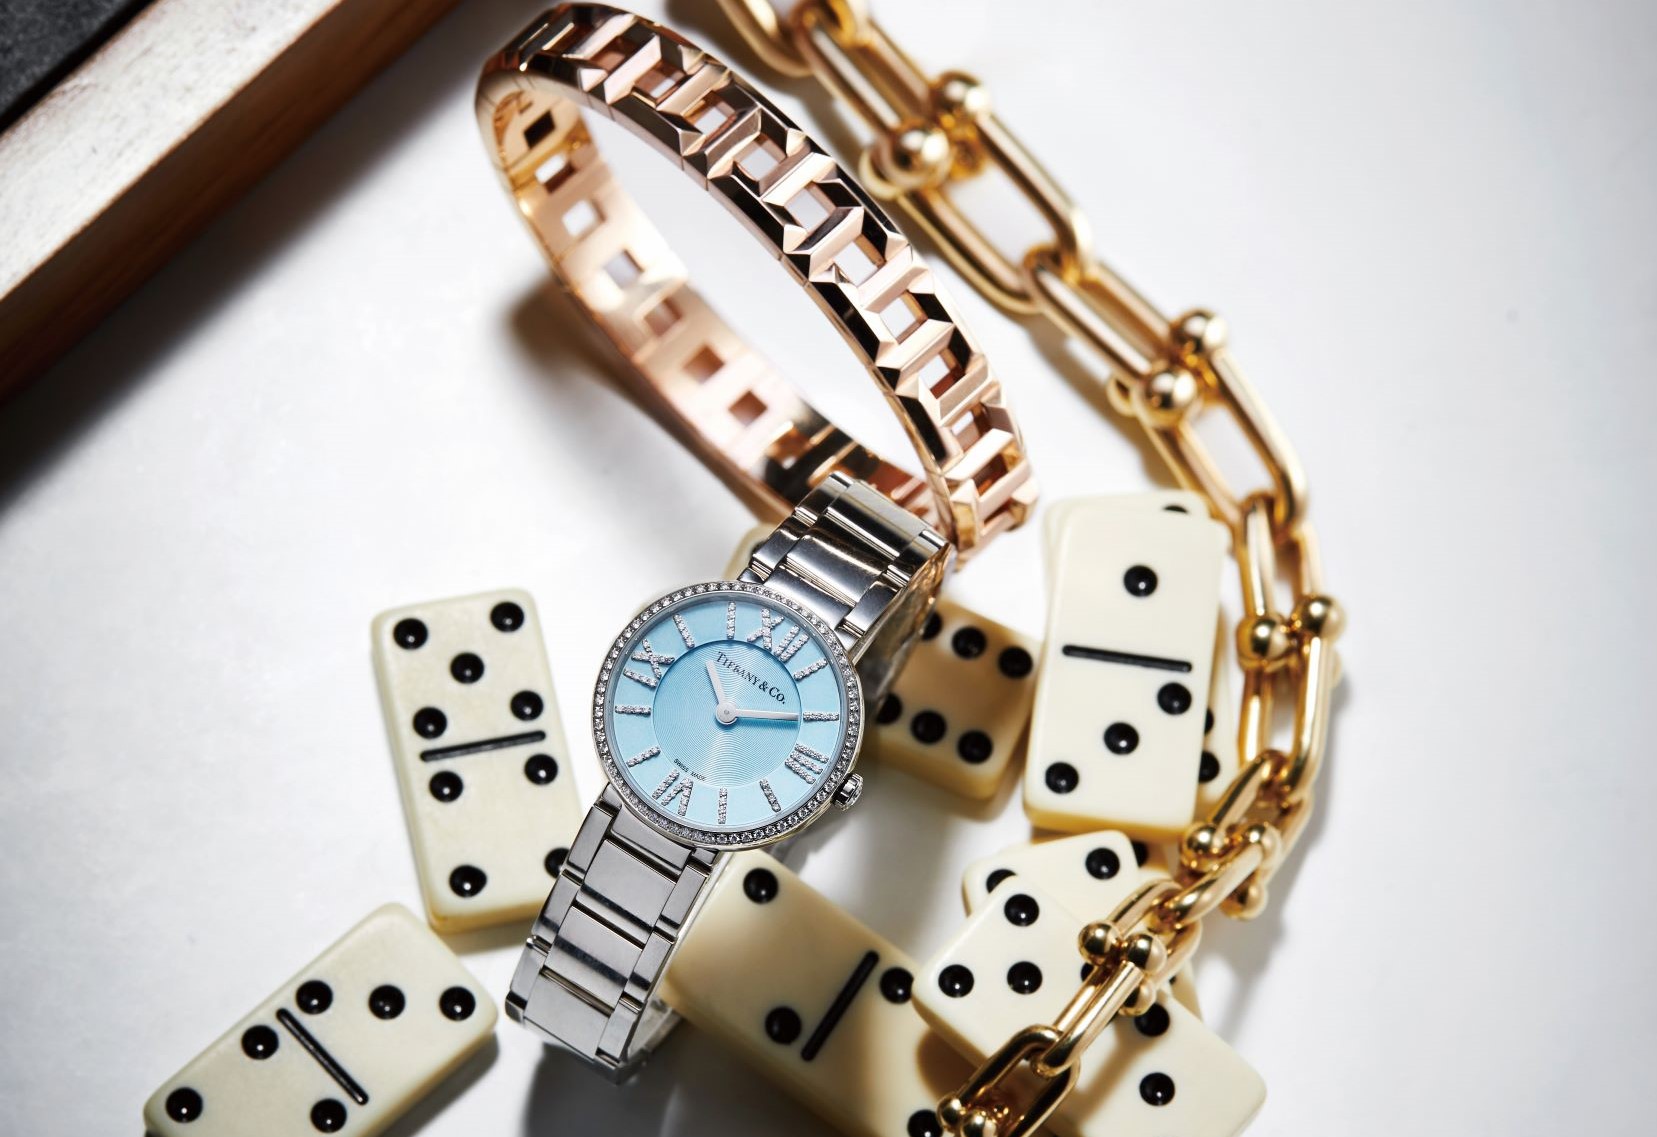 Tiffany HardWear 18K 金鏈結設計項鍊。Tiffany T True 10mm 寬版鏤空設計 18K 玫瑰金手環。Tiffany Atlas 24mm 冰藍色錶盤不鏽鋼鑲鑽女錶。